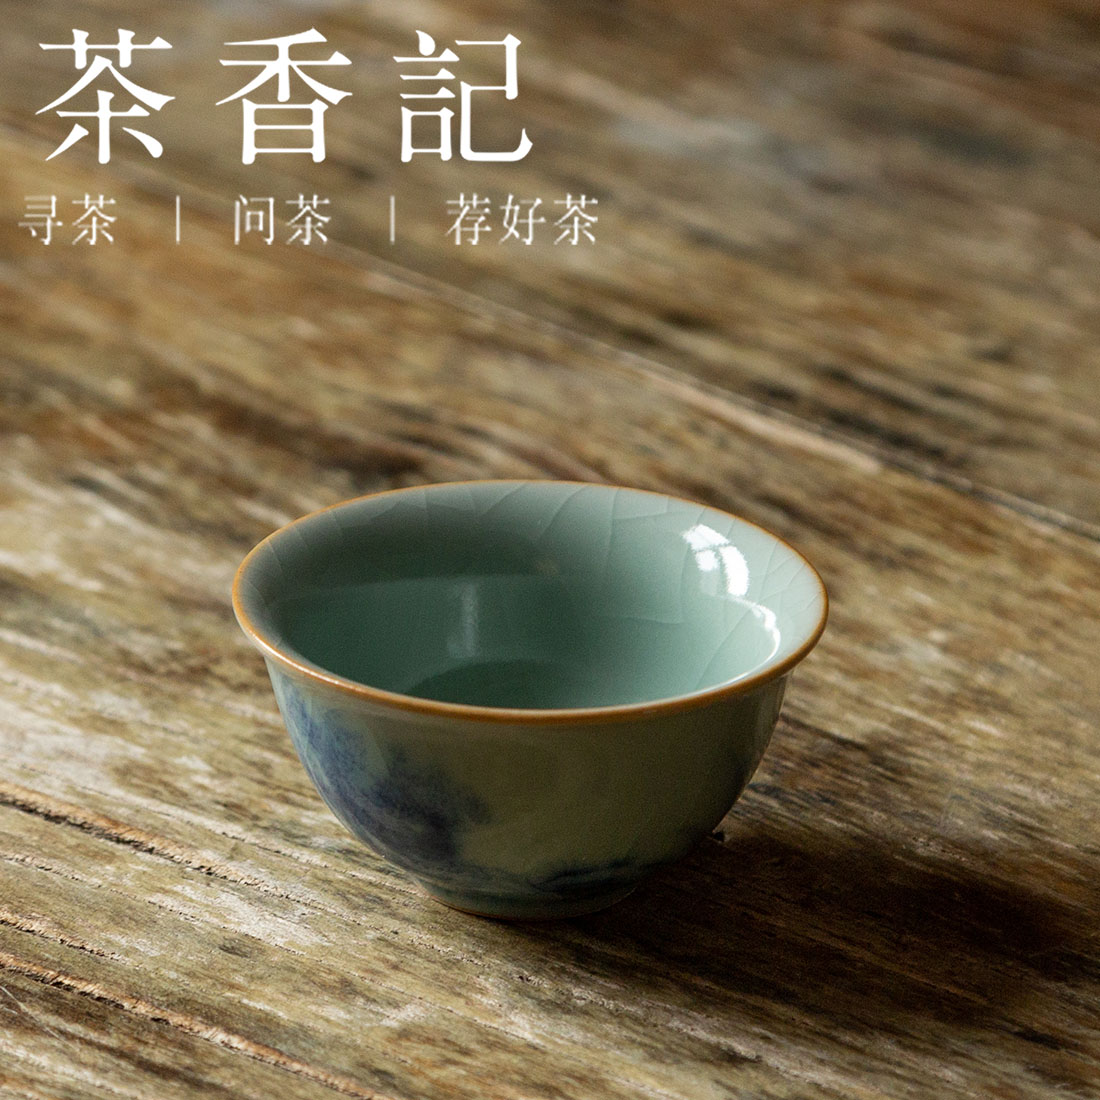 茶香记 天青9号杯 品茗杯 古典文雅 油润细腻 开片灵动 平价实用